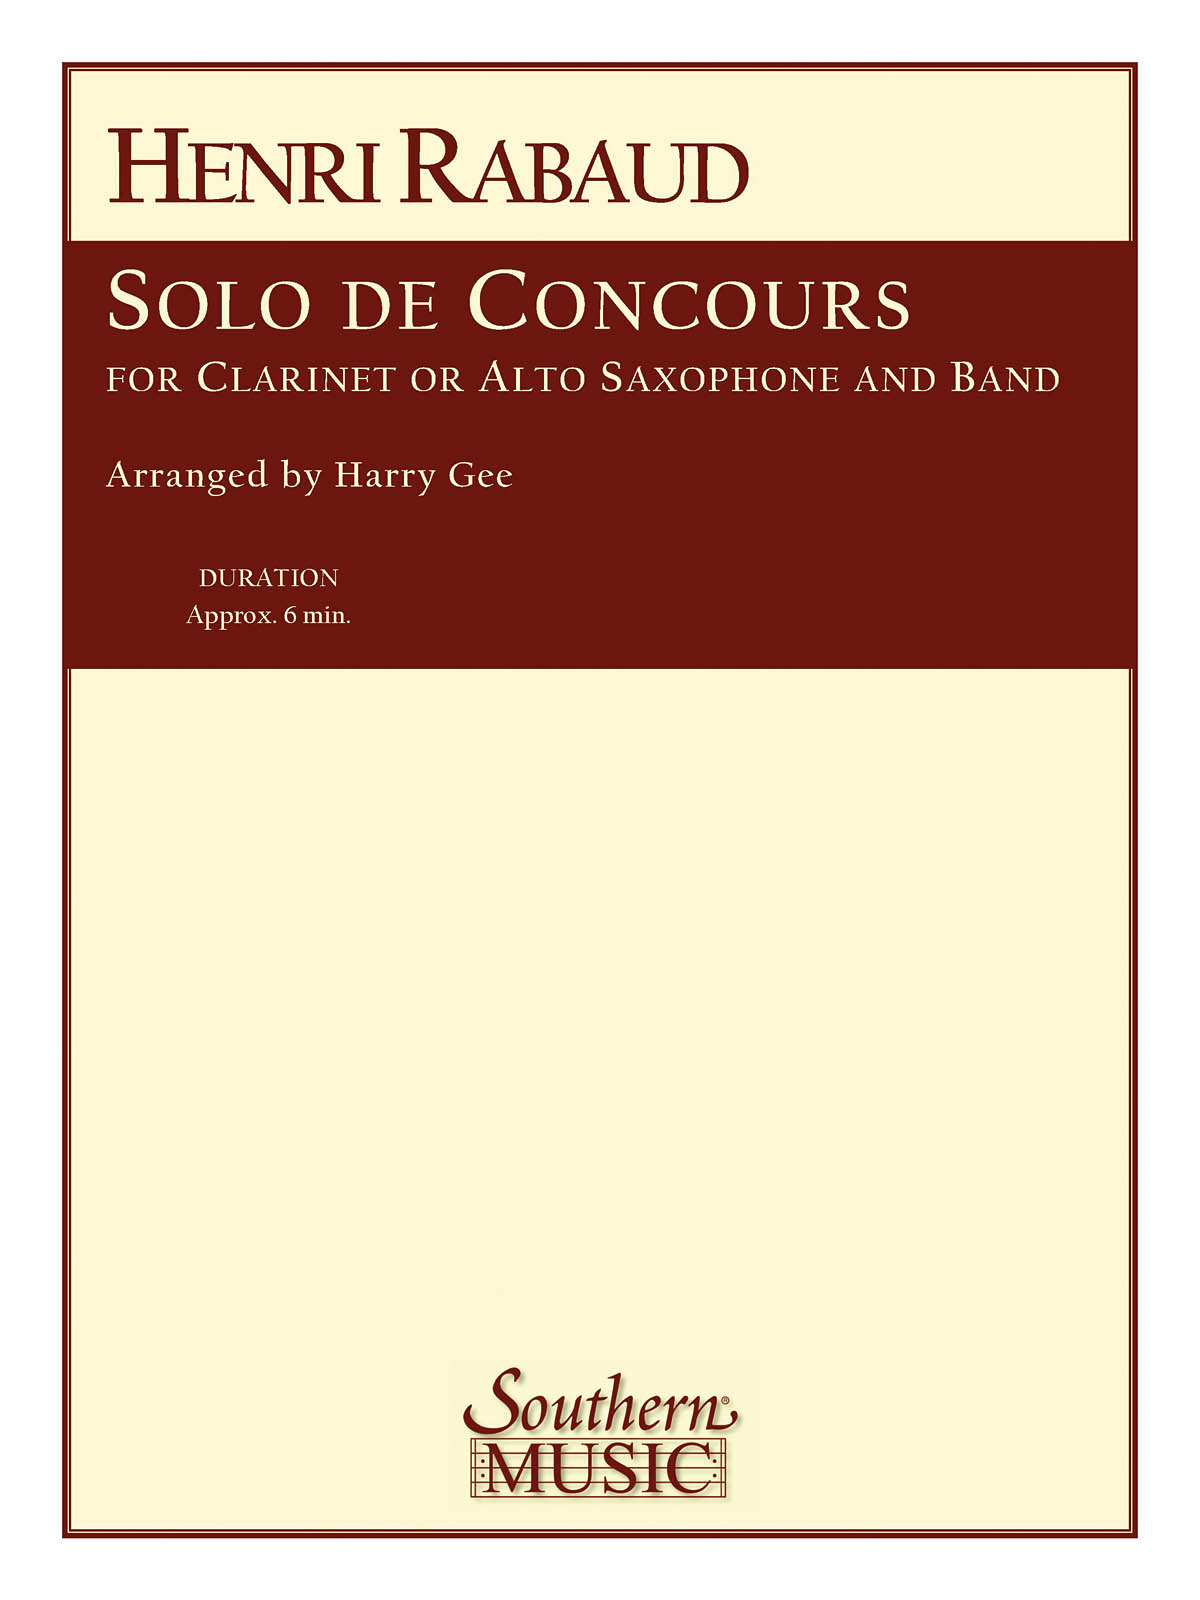 Henri Rabaud: Solo De Concours: Concert Band: Score & Parts